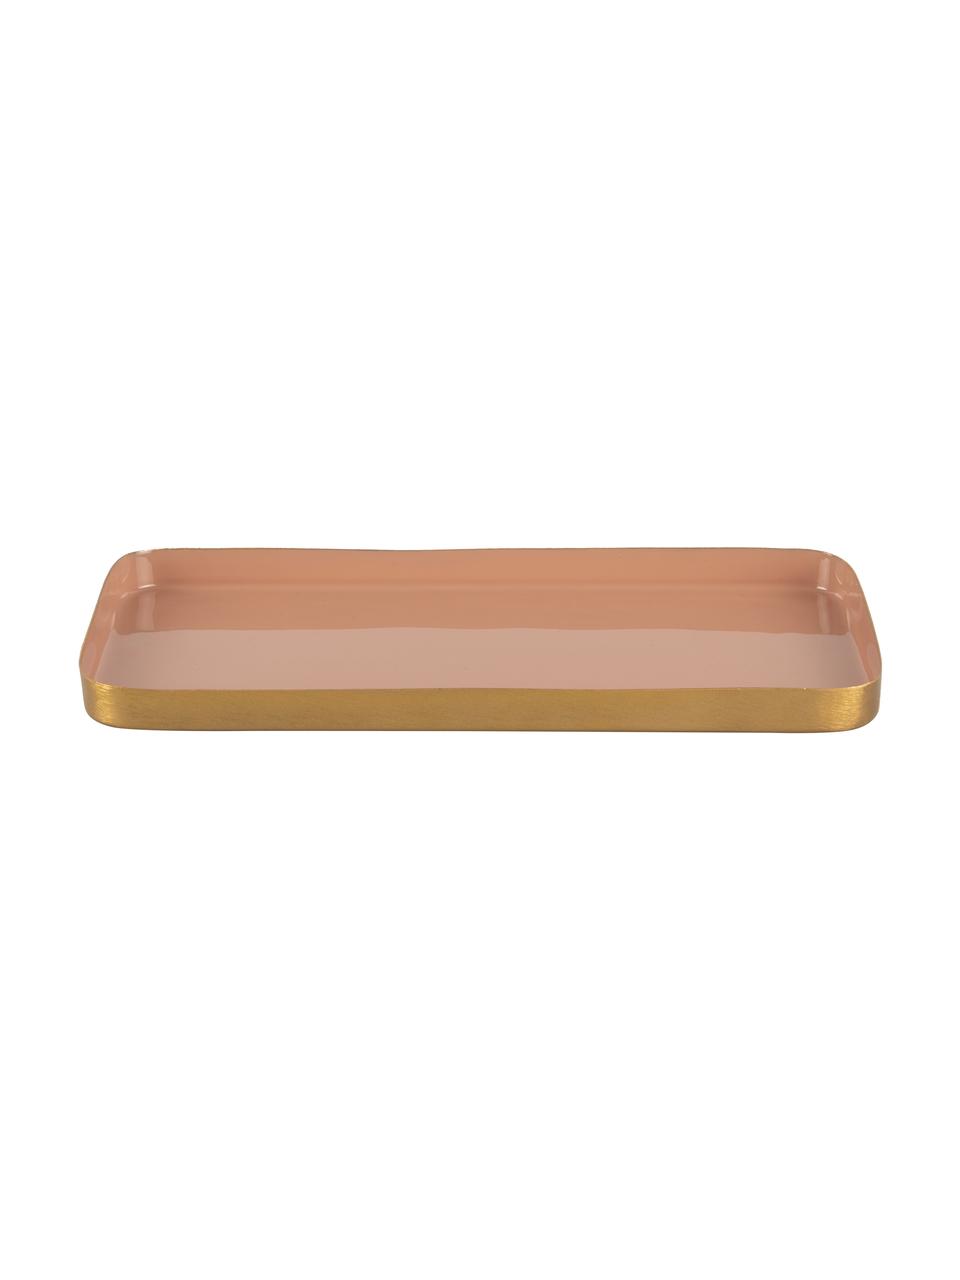 Deko-Tablett Festive mit glänzender Oberfläche, Metall, beschichtet, Rosa, Goldfarben, L 25 x B 13 cm